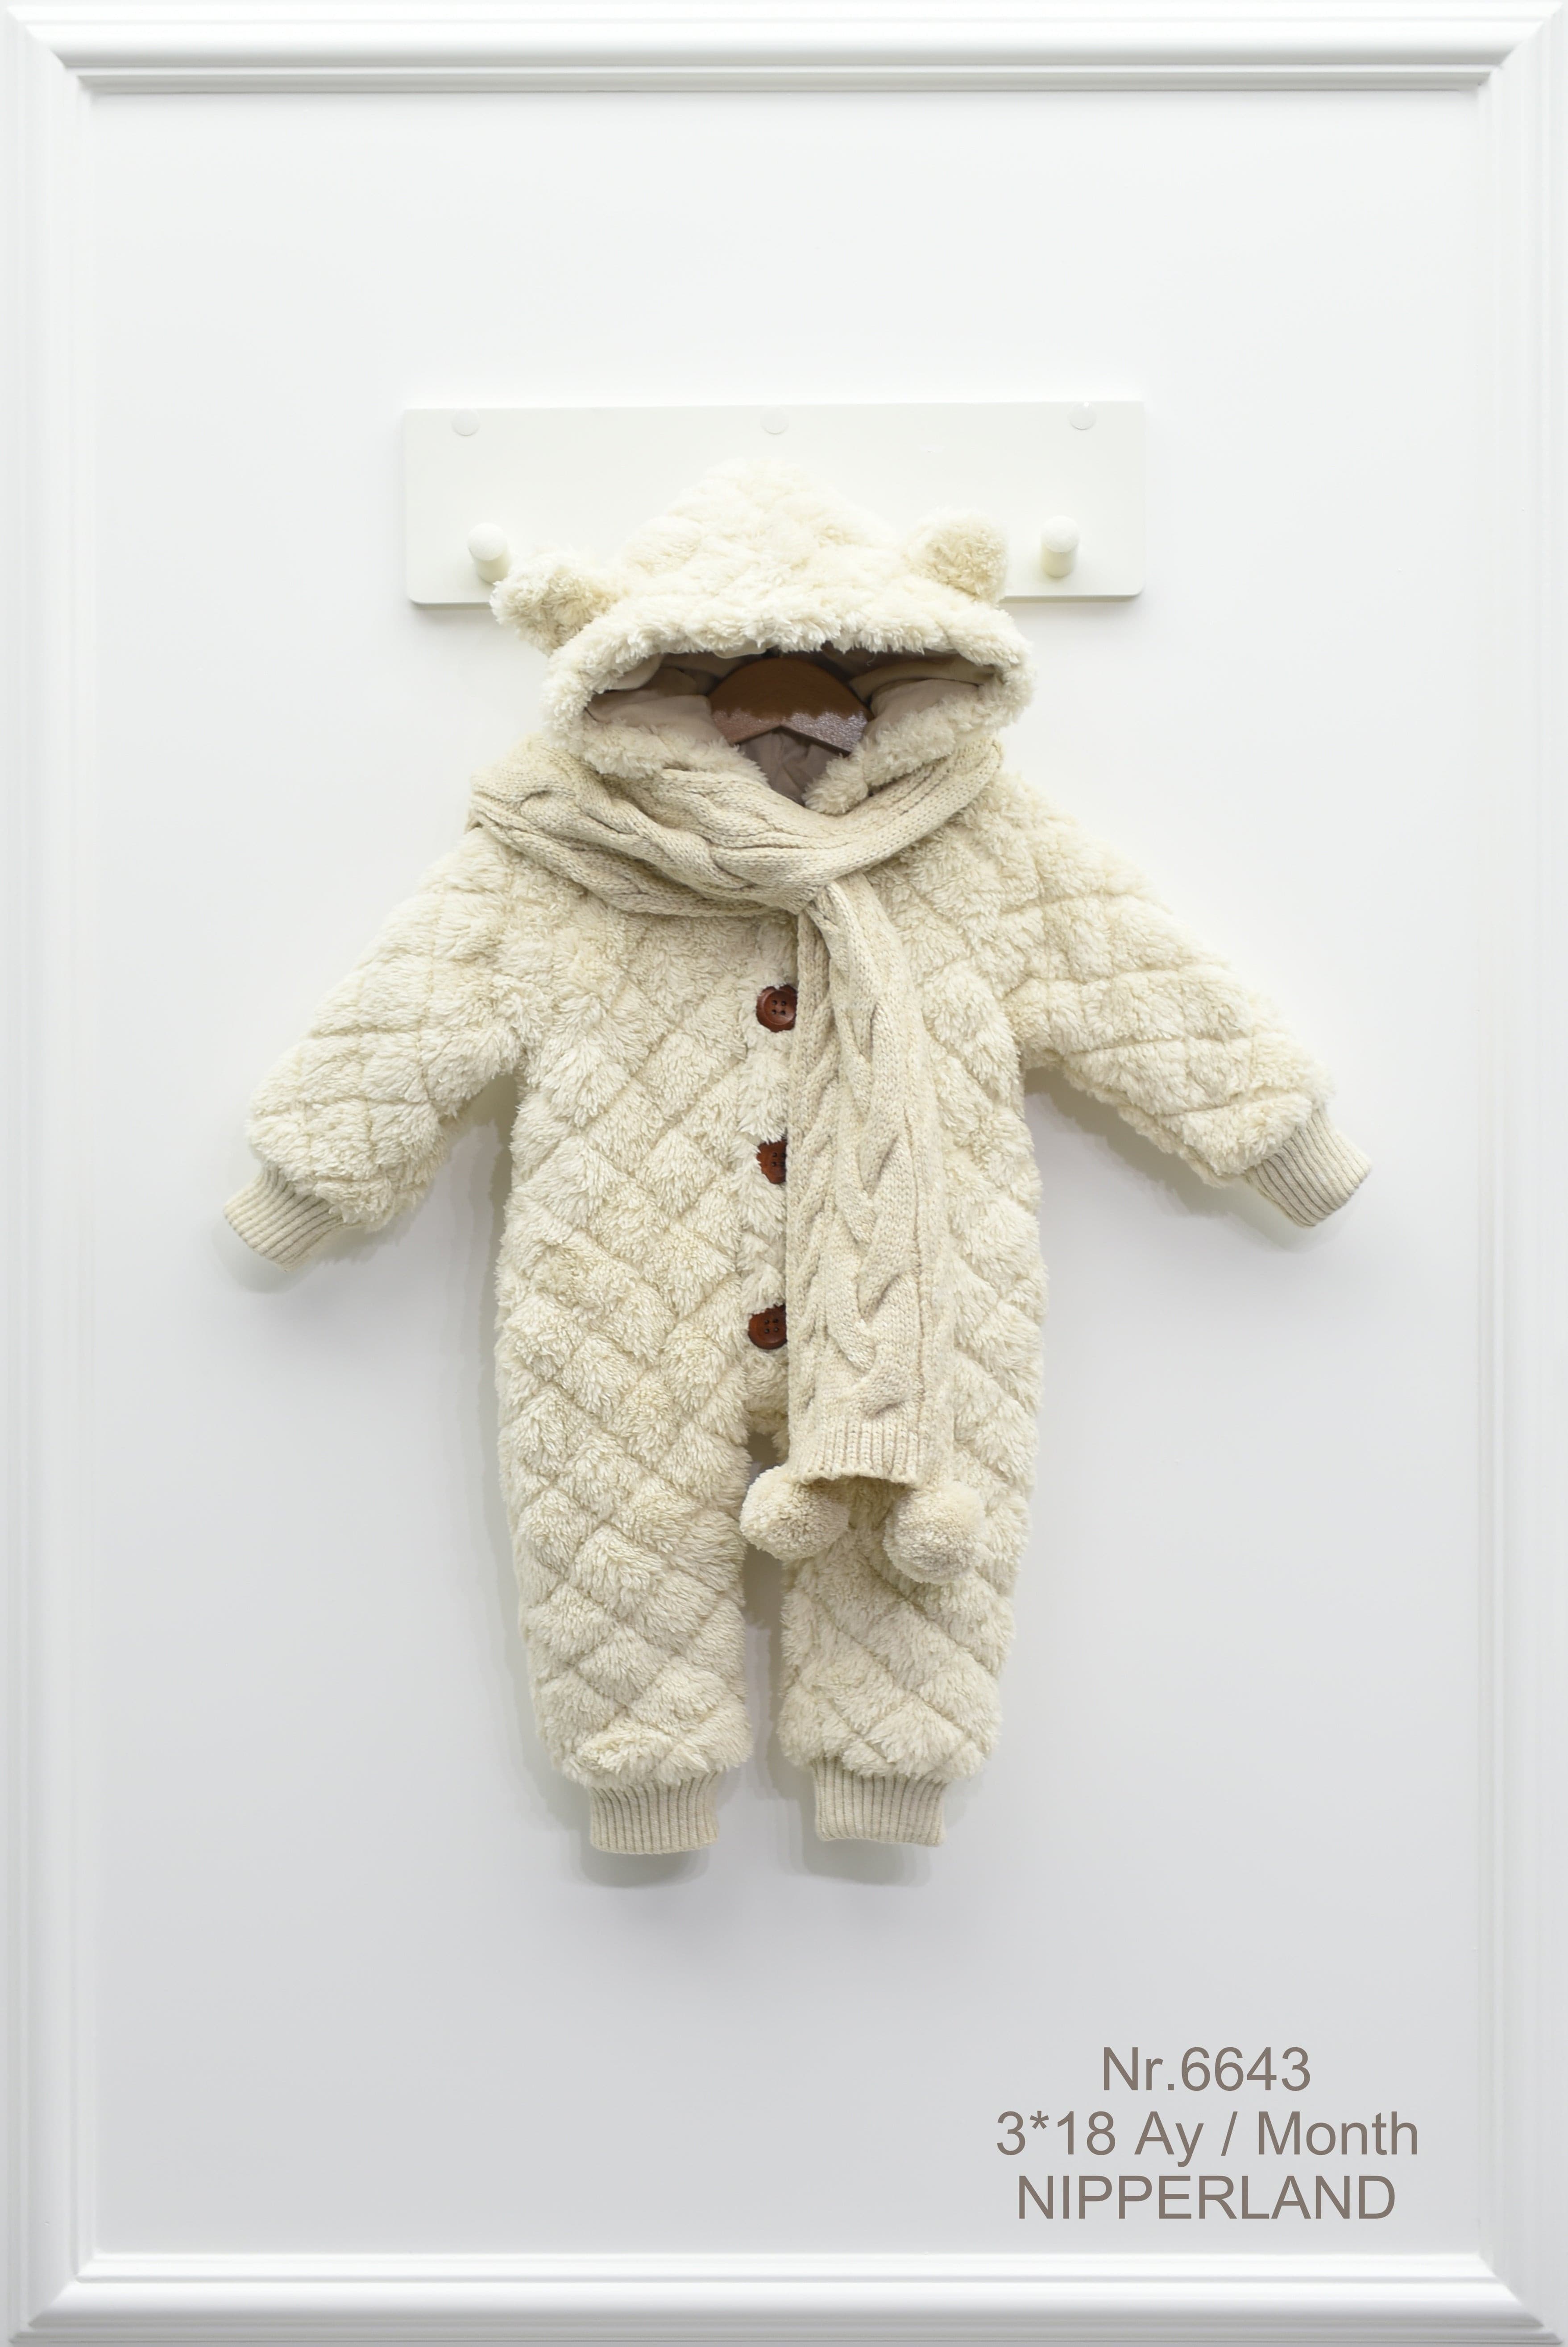 Nipperland Combinaison bébé confortable avec capuche, écharpe-6643